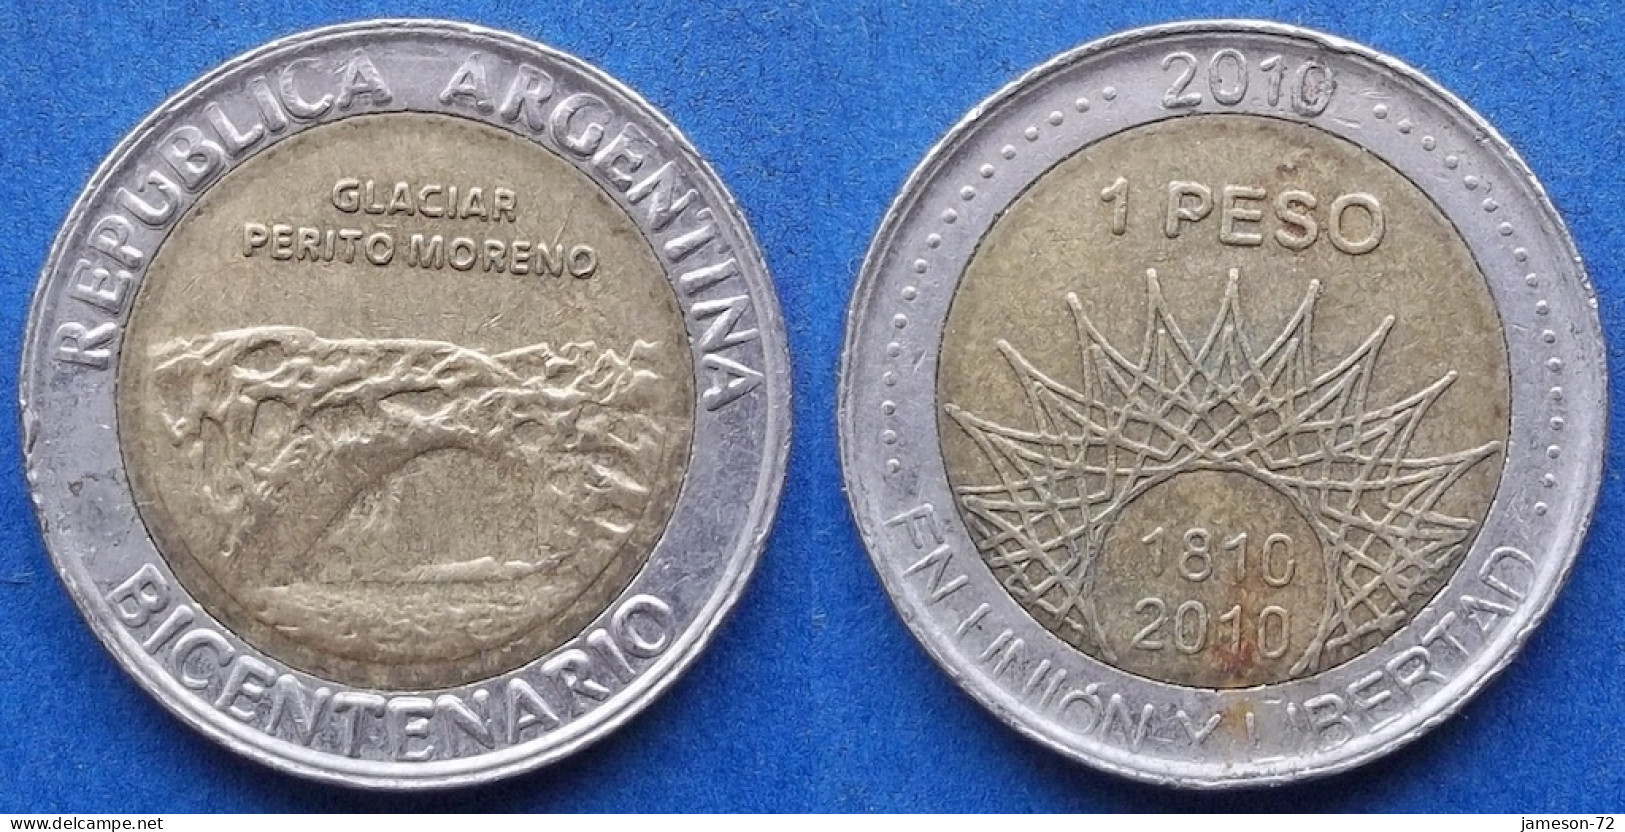 ARGENTINA - 1 Peso 2010 "Glacier Perito Moreno" KM# 160 Monetary Reform (1992) - Edelweiss Coins - Argentina